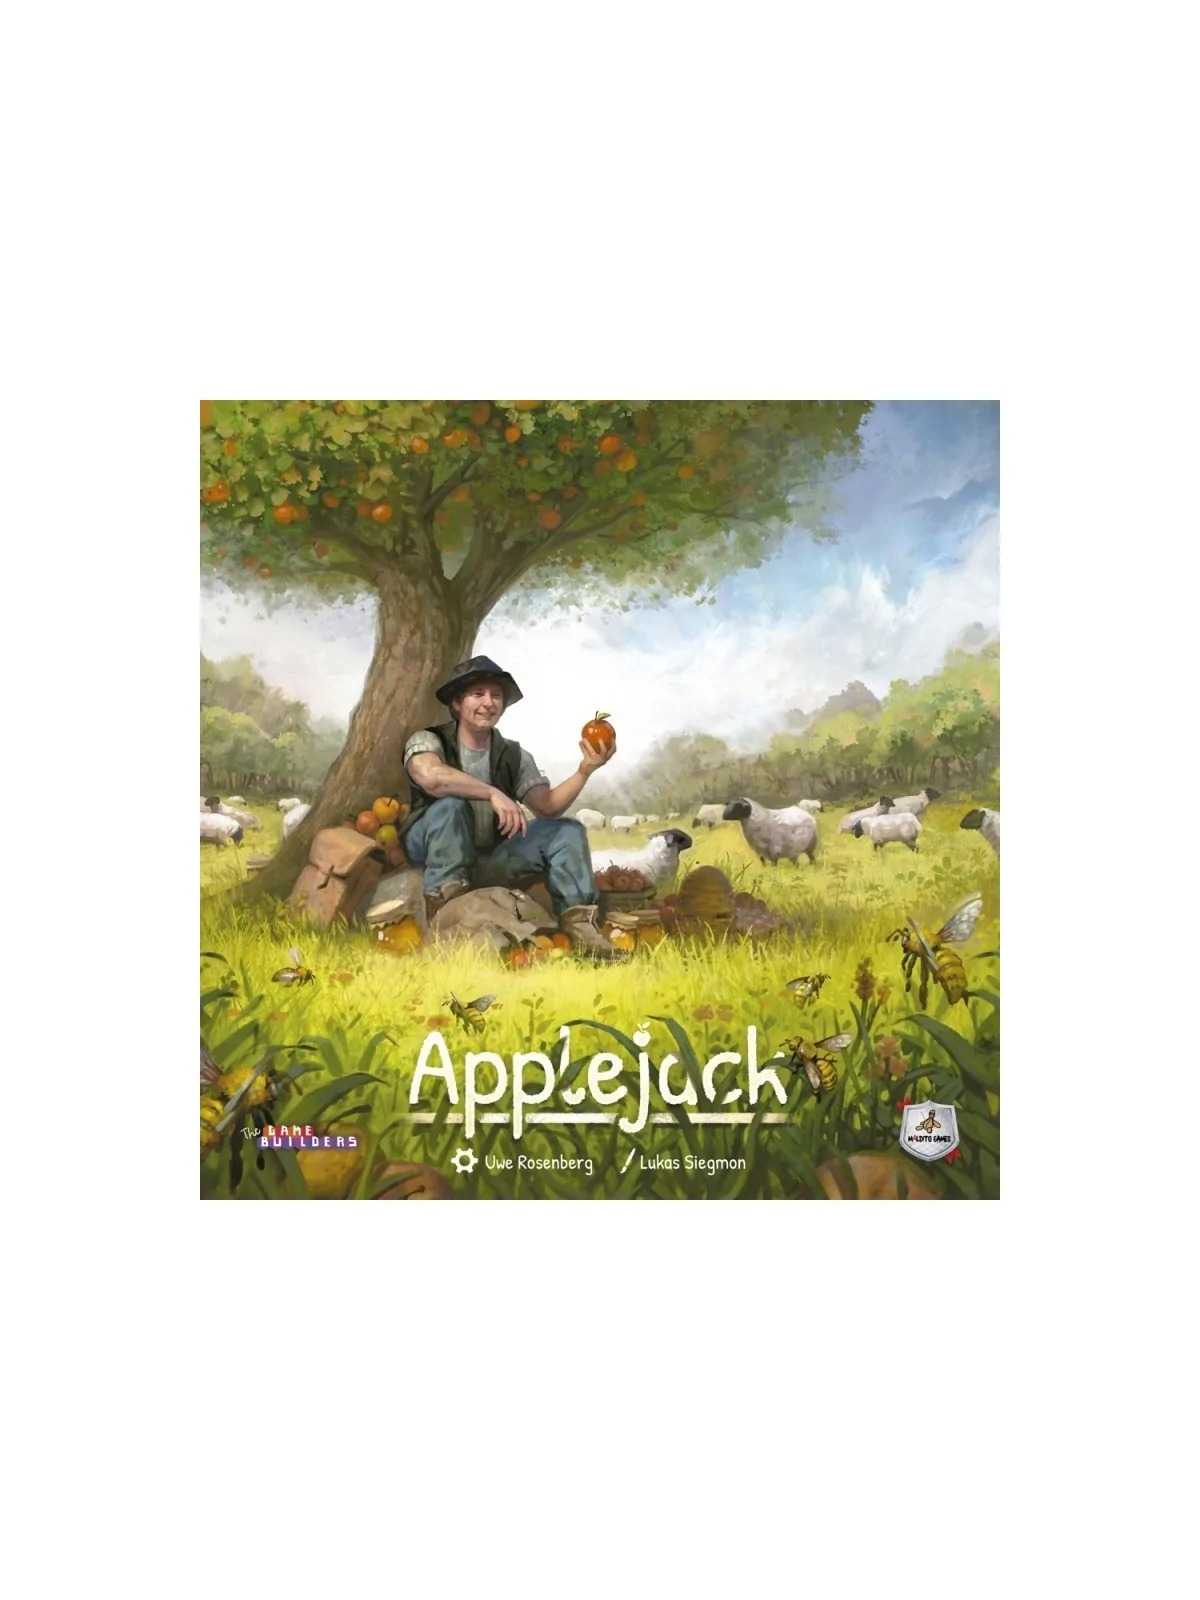 Comprar Applejack barato al mejor precio 31,50 € de Maldito Games